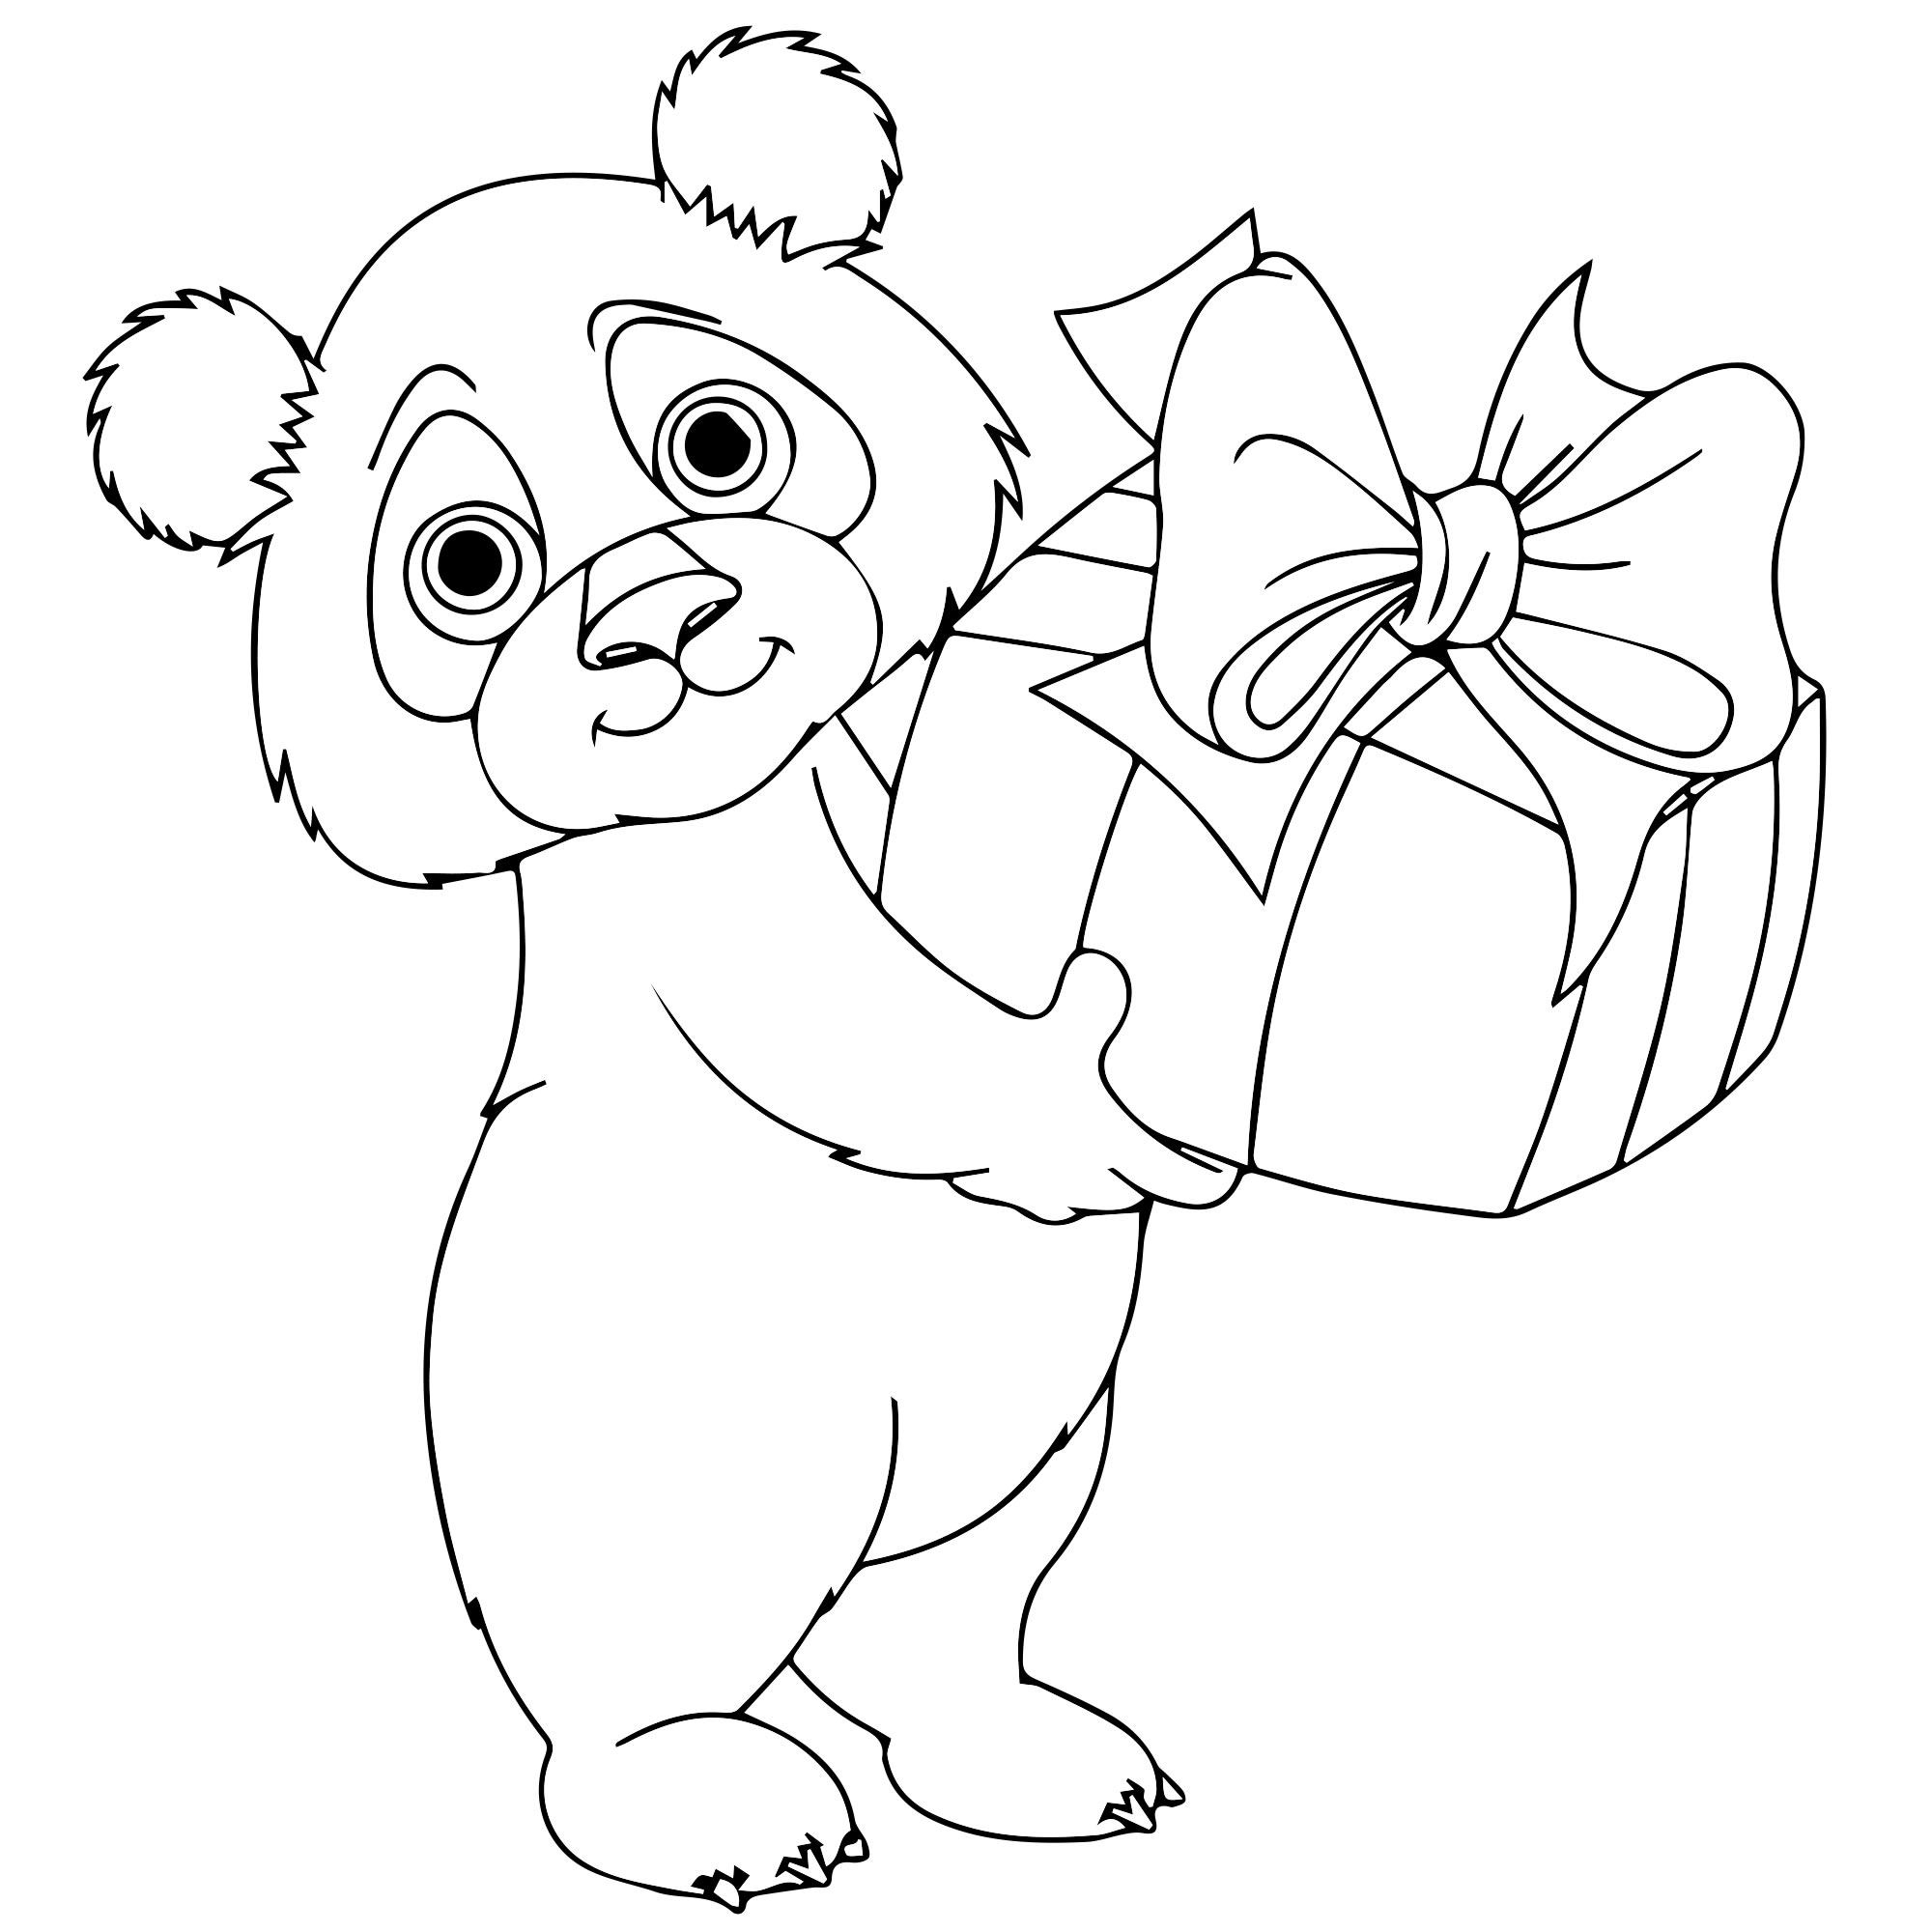 Панда раскраска для детей 4-5 лет